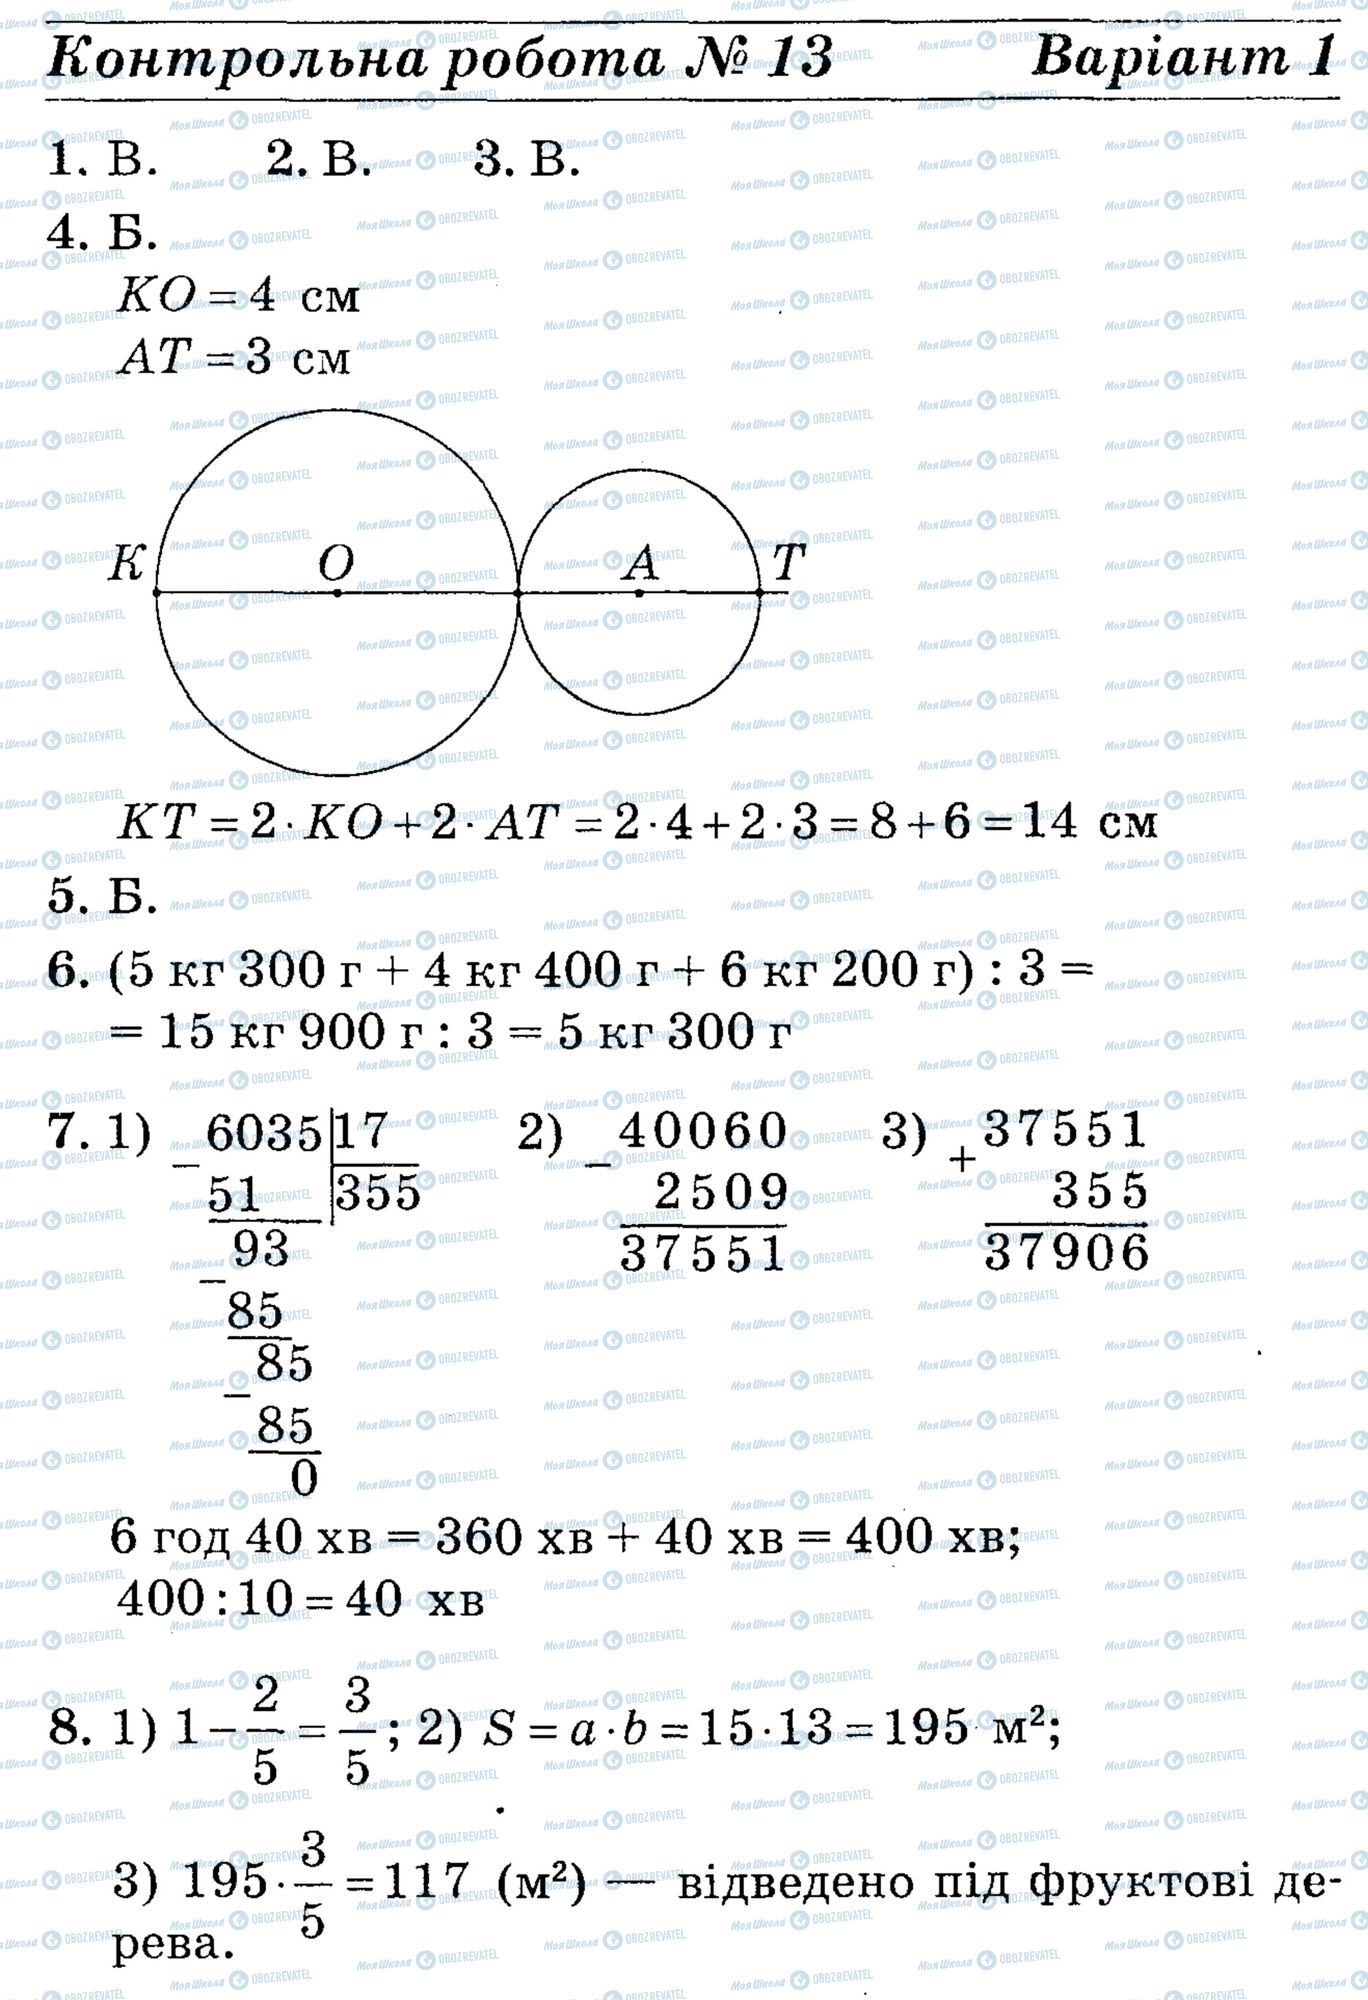 ДПА Математика 4 класс страница math-DPA-2013-4kl-K13-7